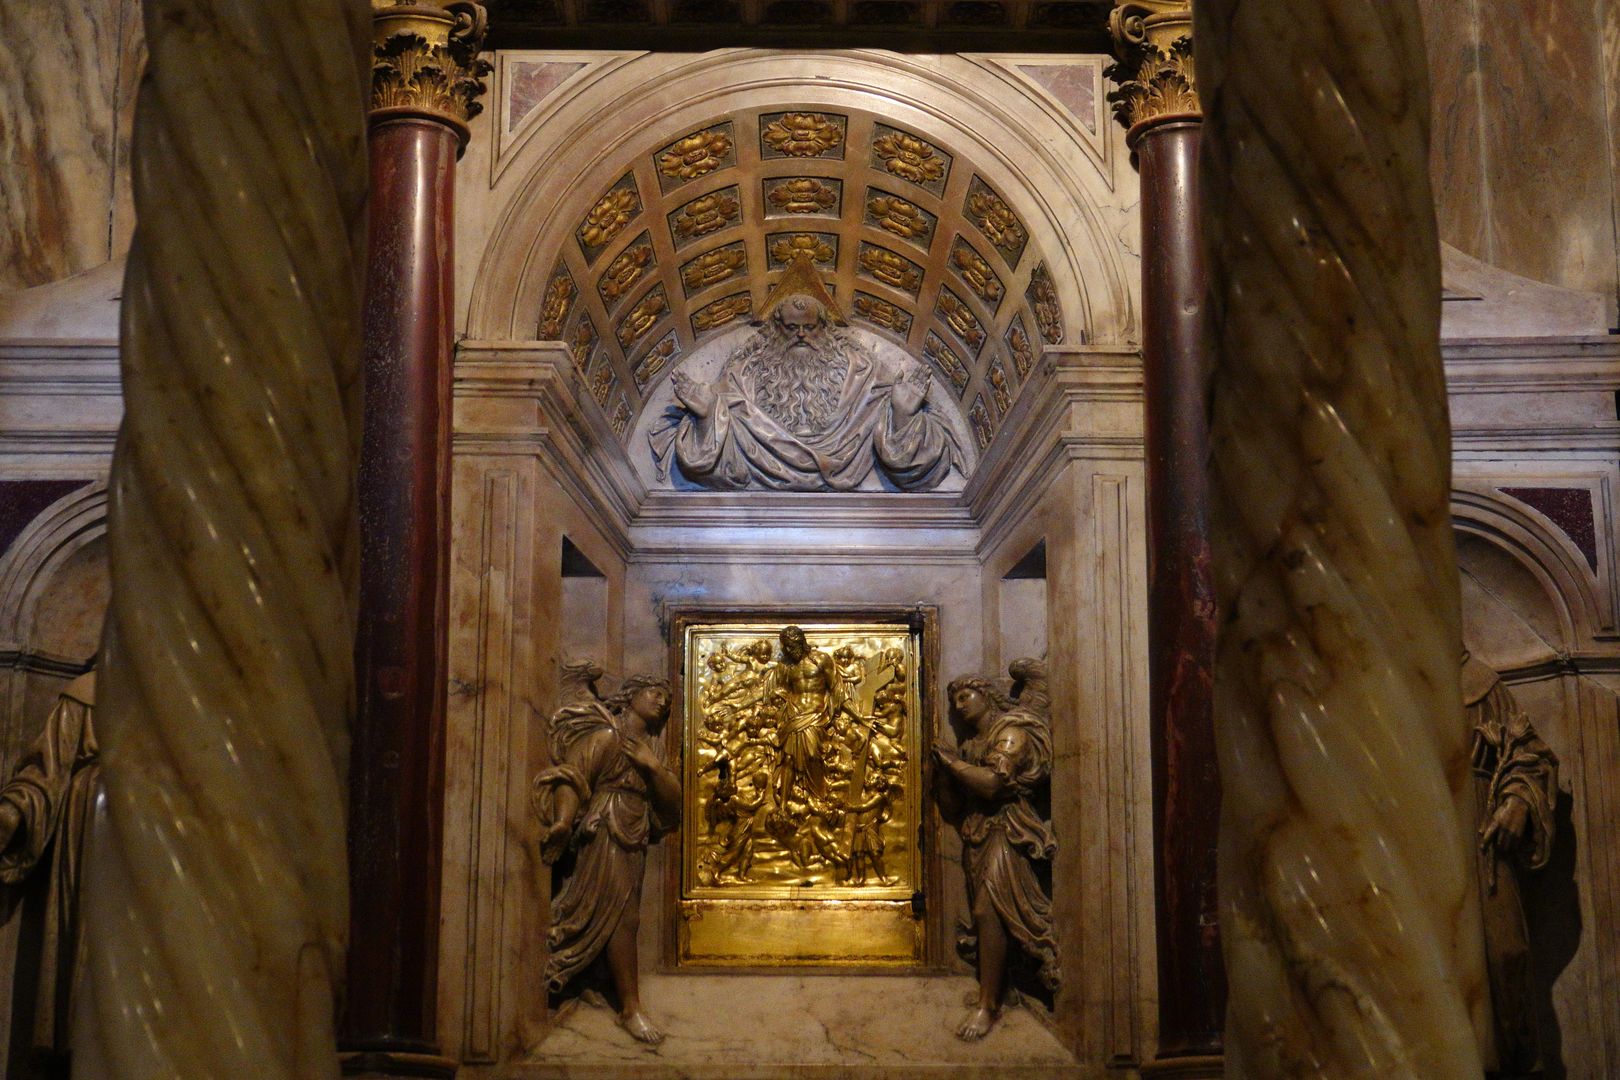 Benátky_Bazilika sv. Marka_interiér (15)